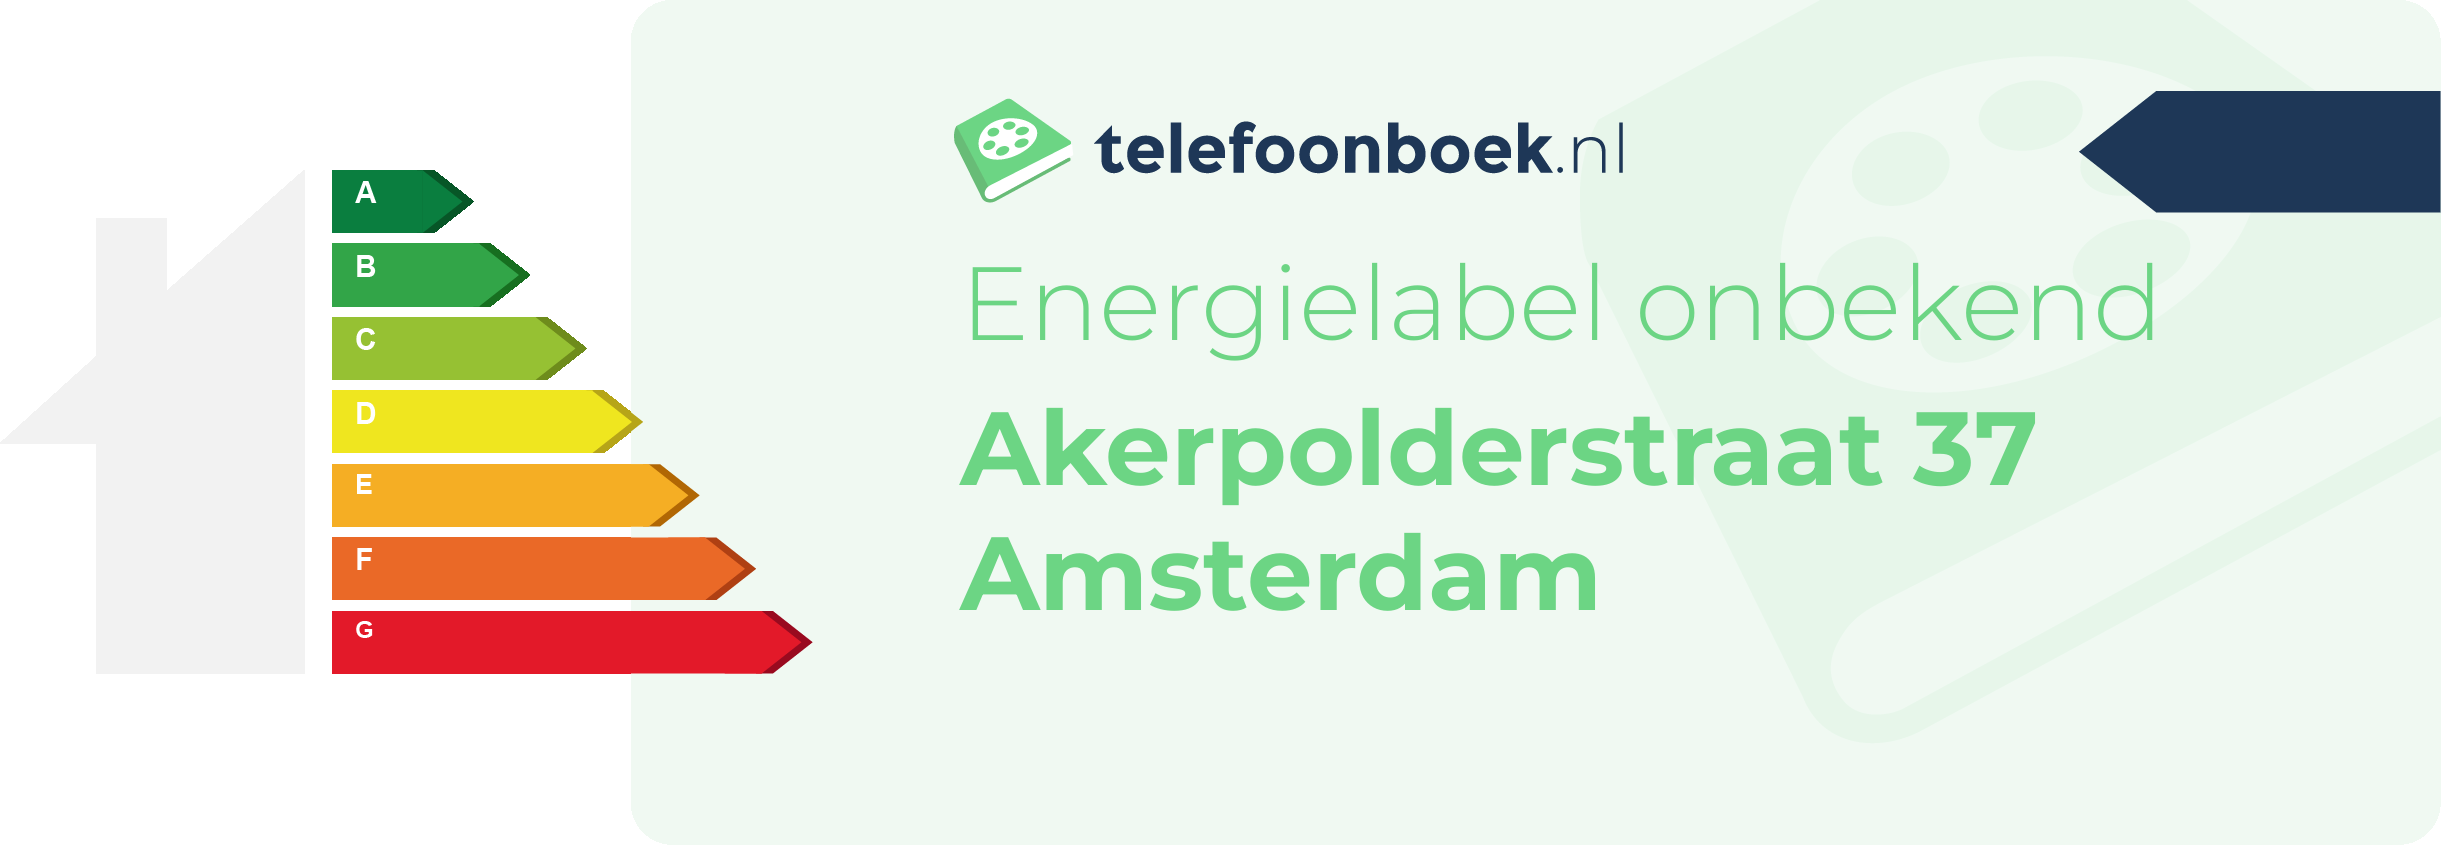 Energielabel Akerpolderstraat 37 Amsterdam